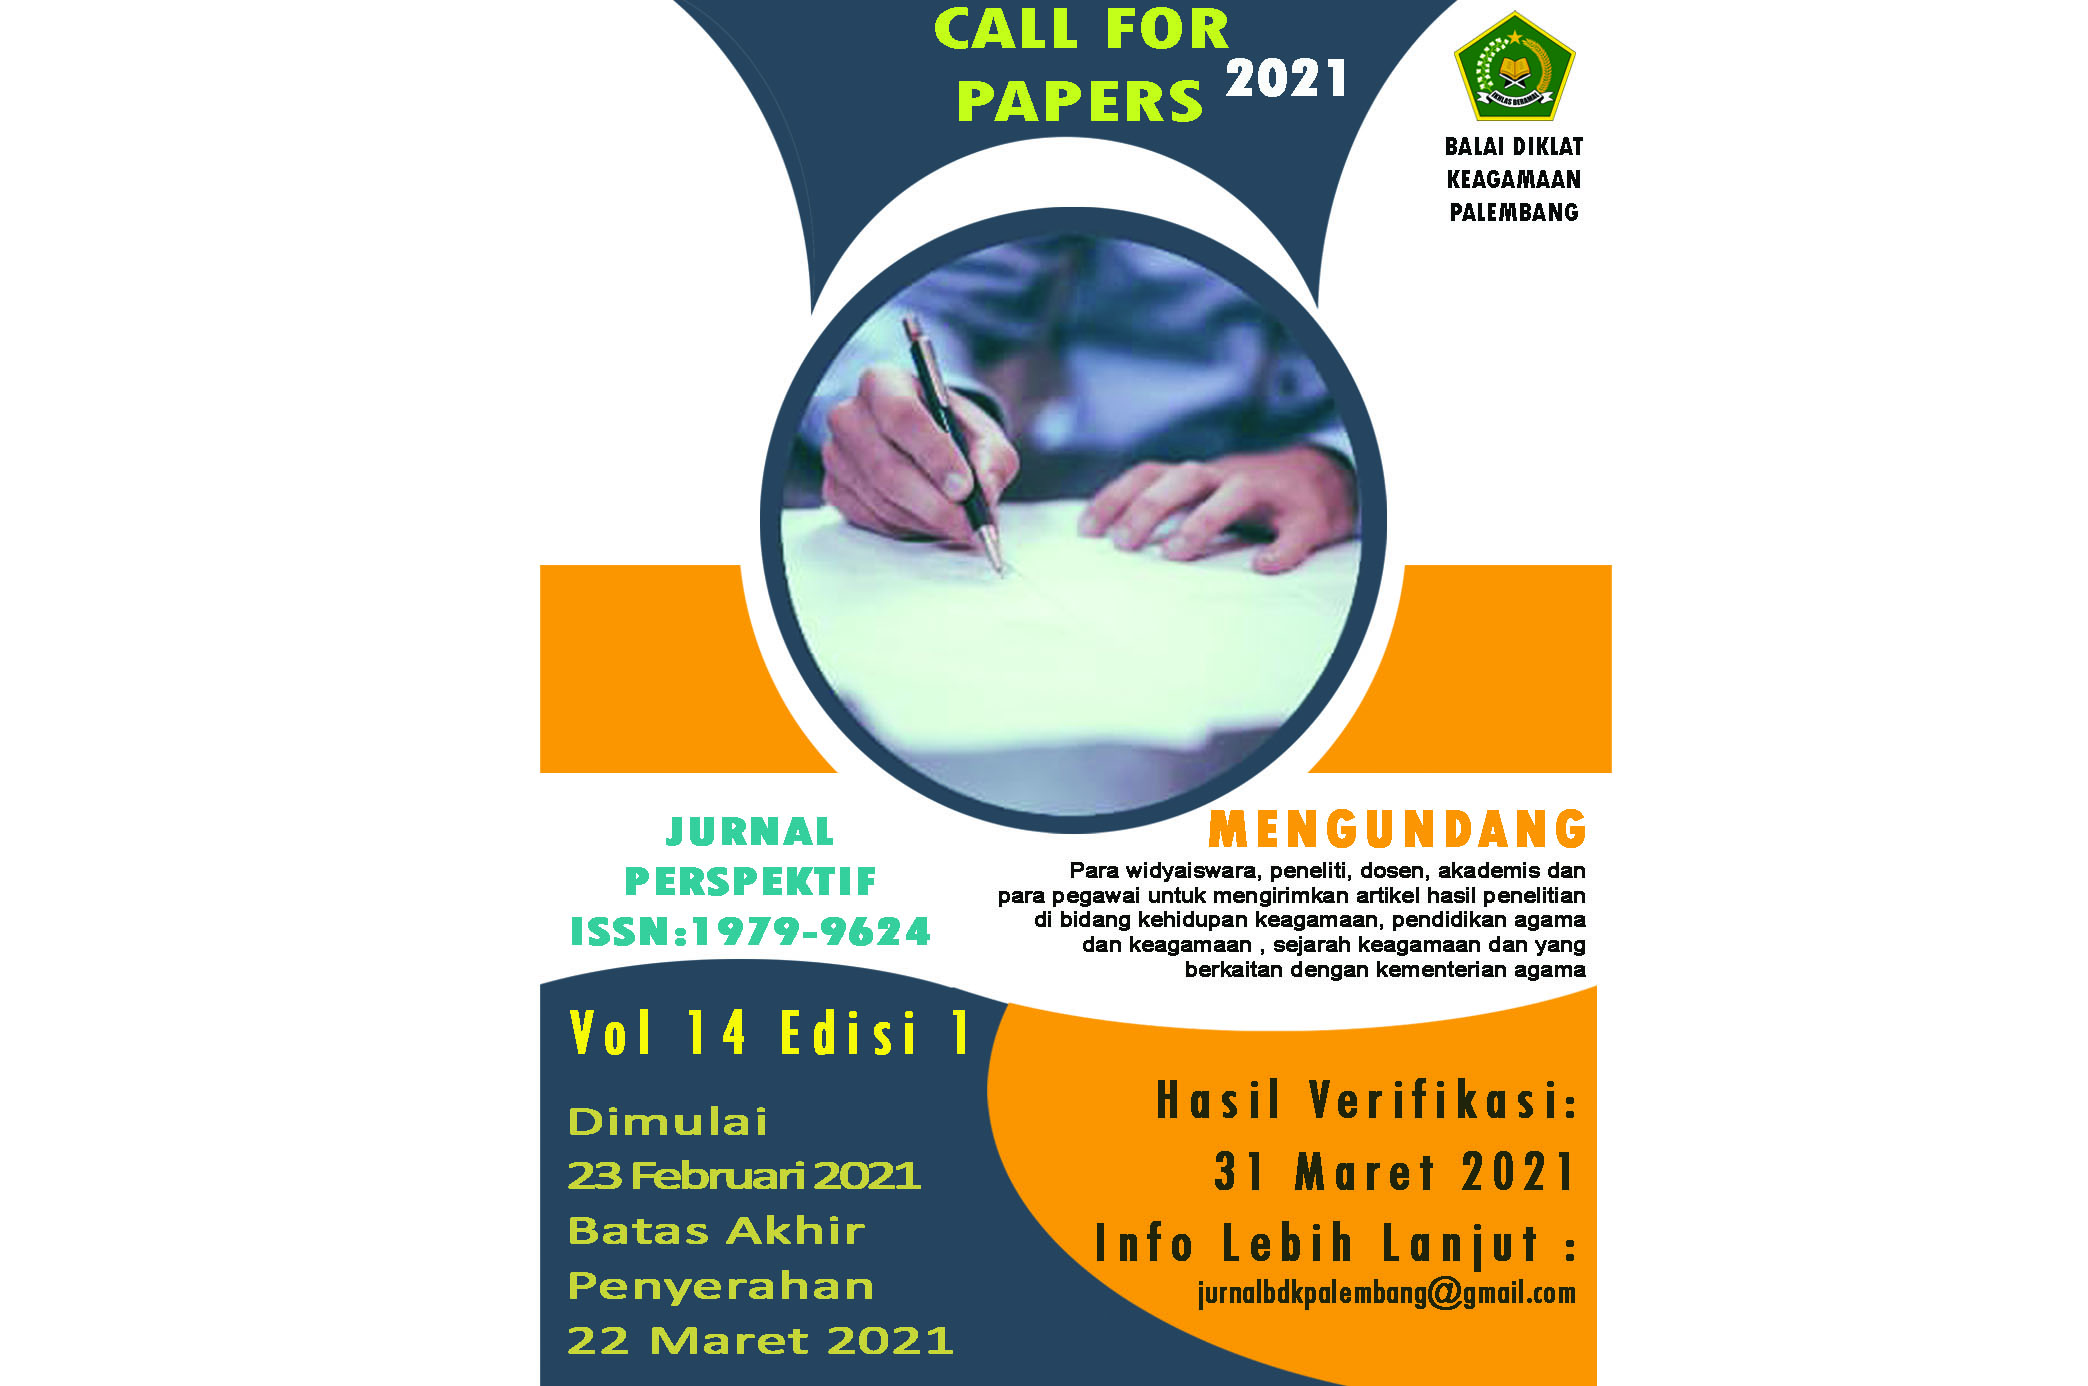 Call For Papers Jurnal Perspektif Vol. 14 Edisi I 2021